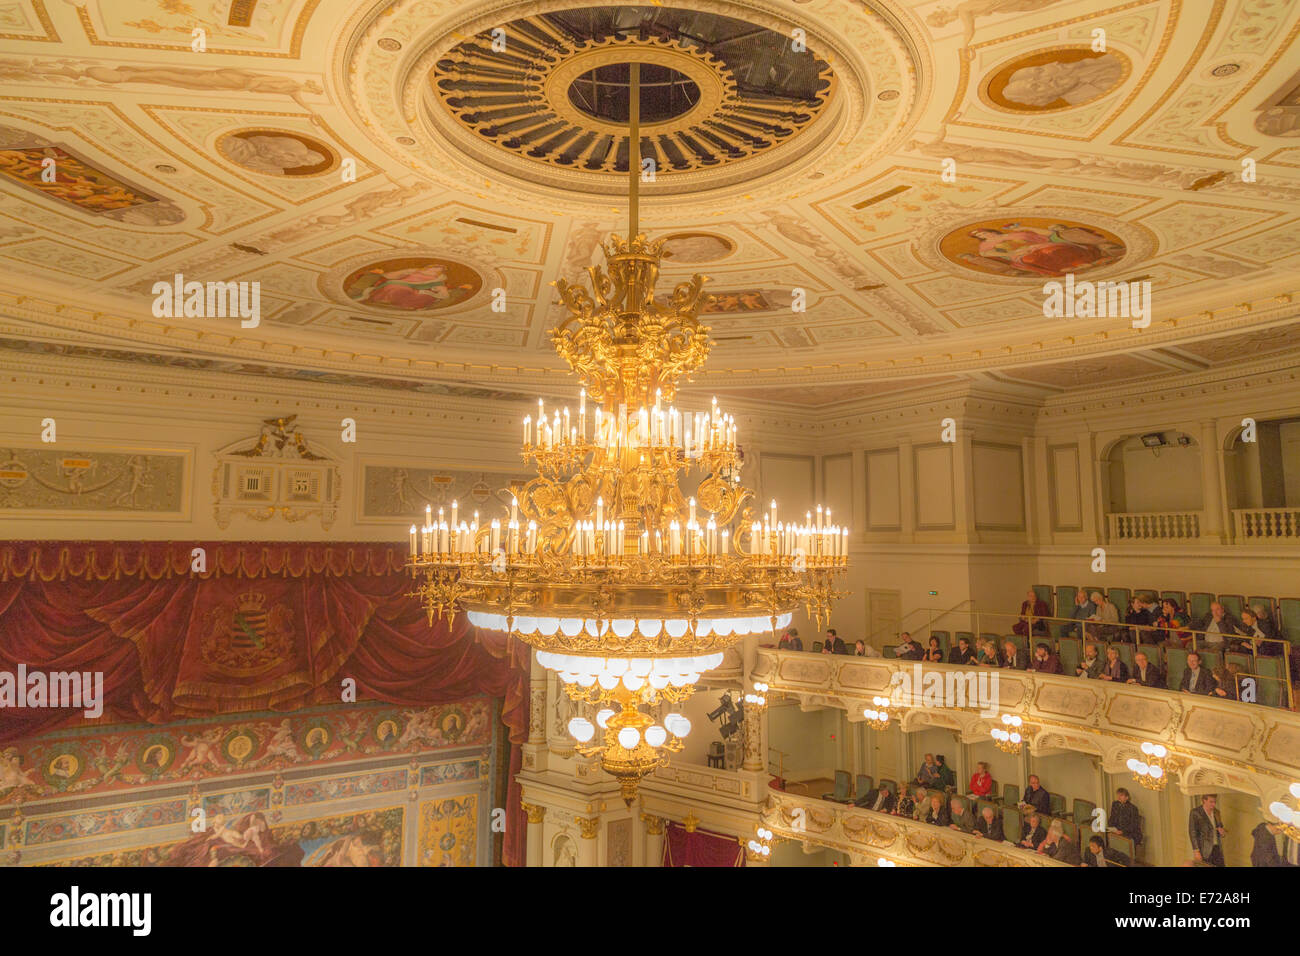 Vista interior de la casa de ópera Semper, estucadas araña en el techo y el "reloj" de cinco minutos, Dresde, Sajonia Foto de stock